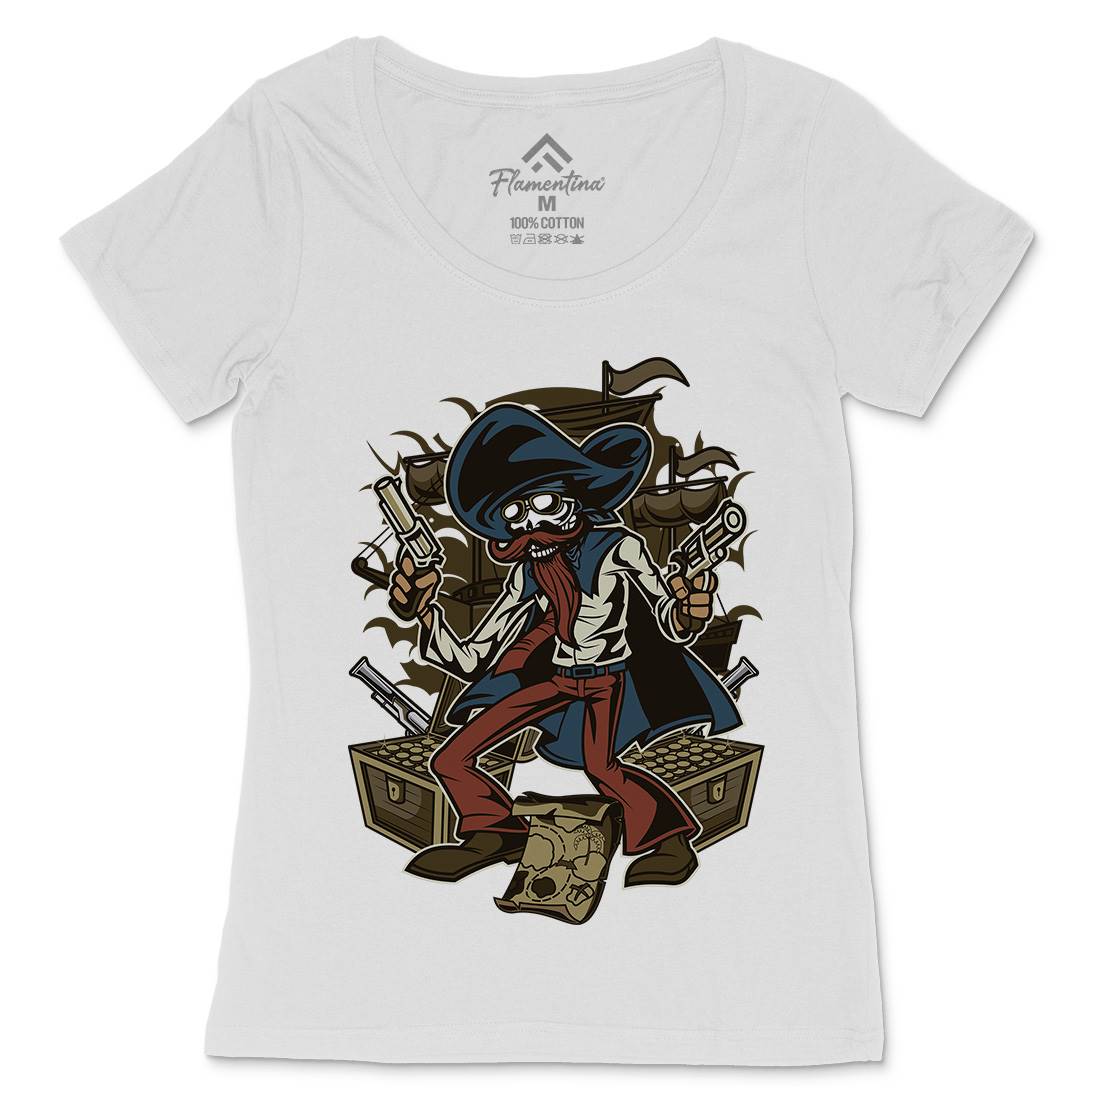 Pirate Treasure Womens Scoop Neck T-Shirt Navy C420